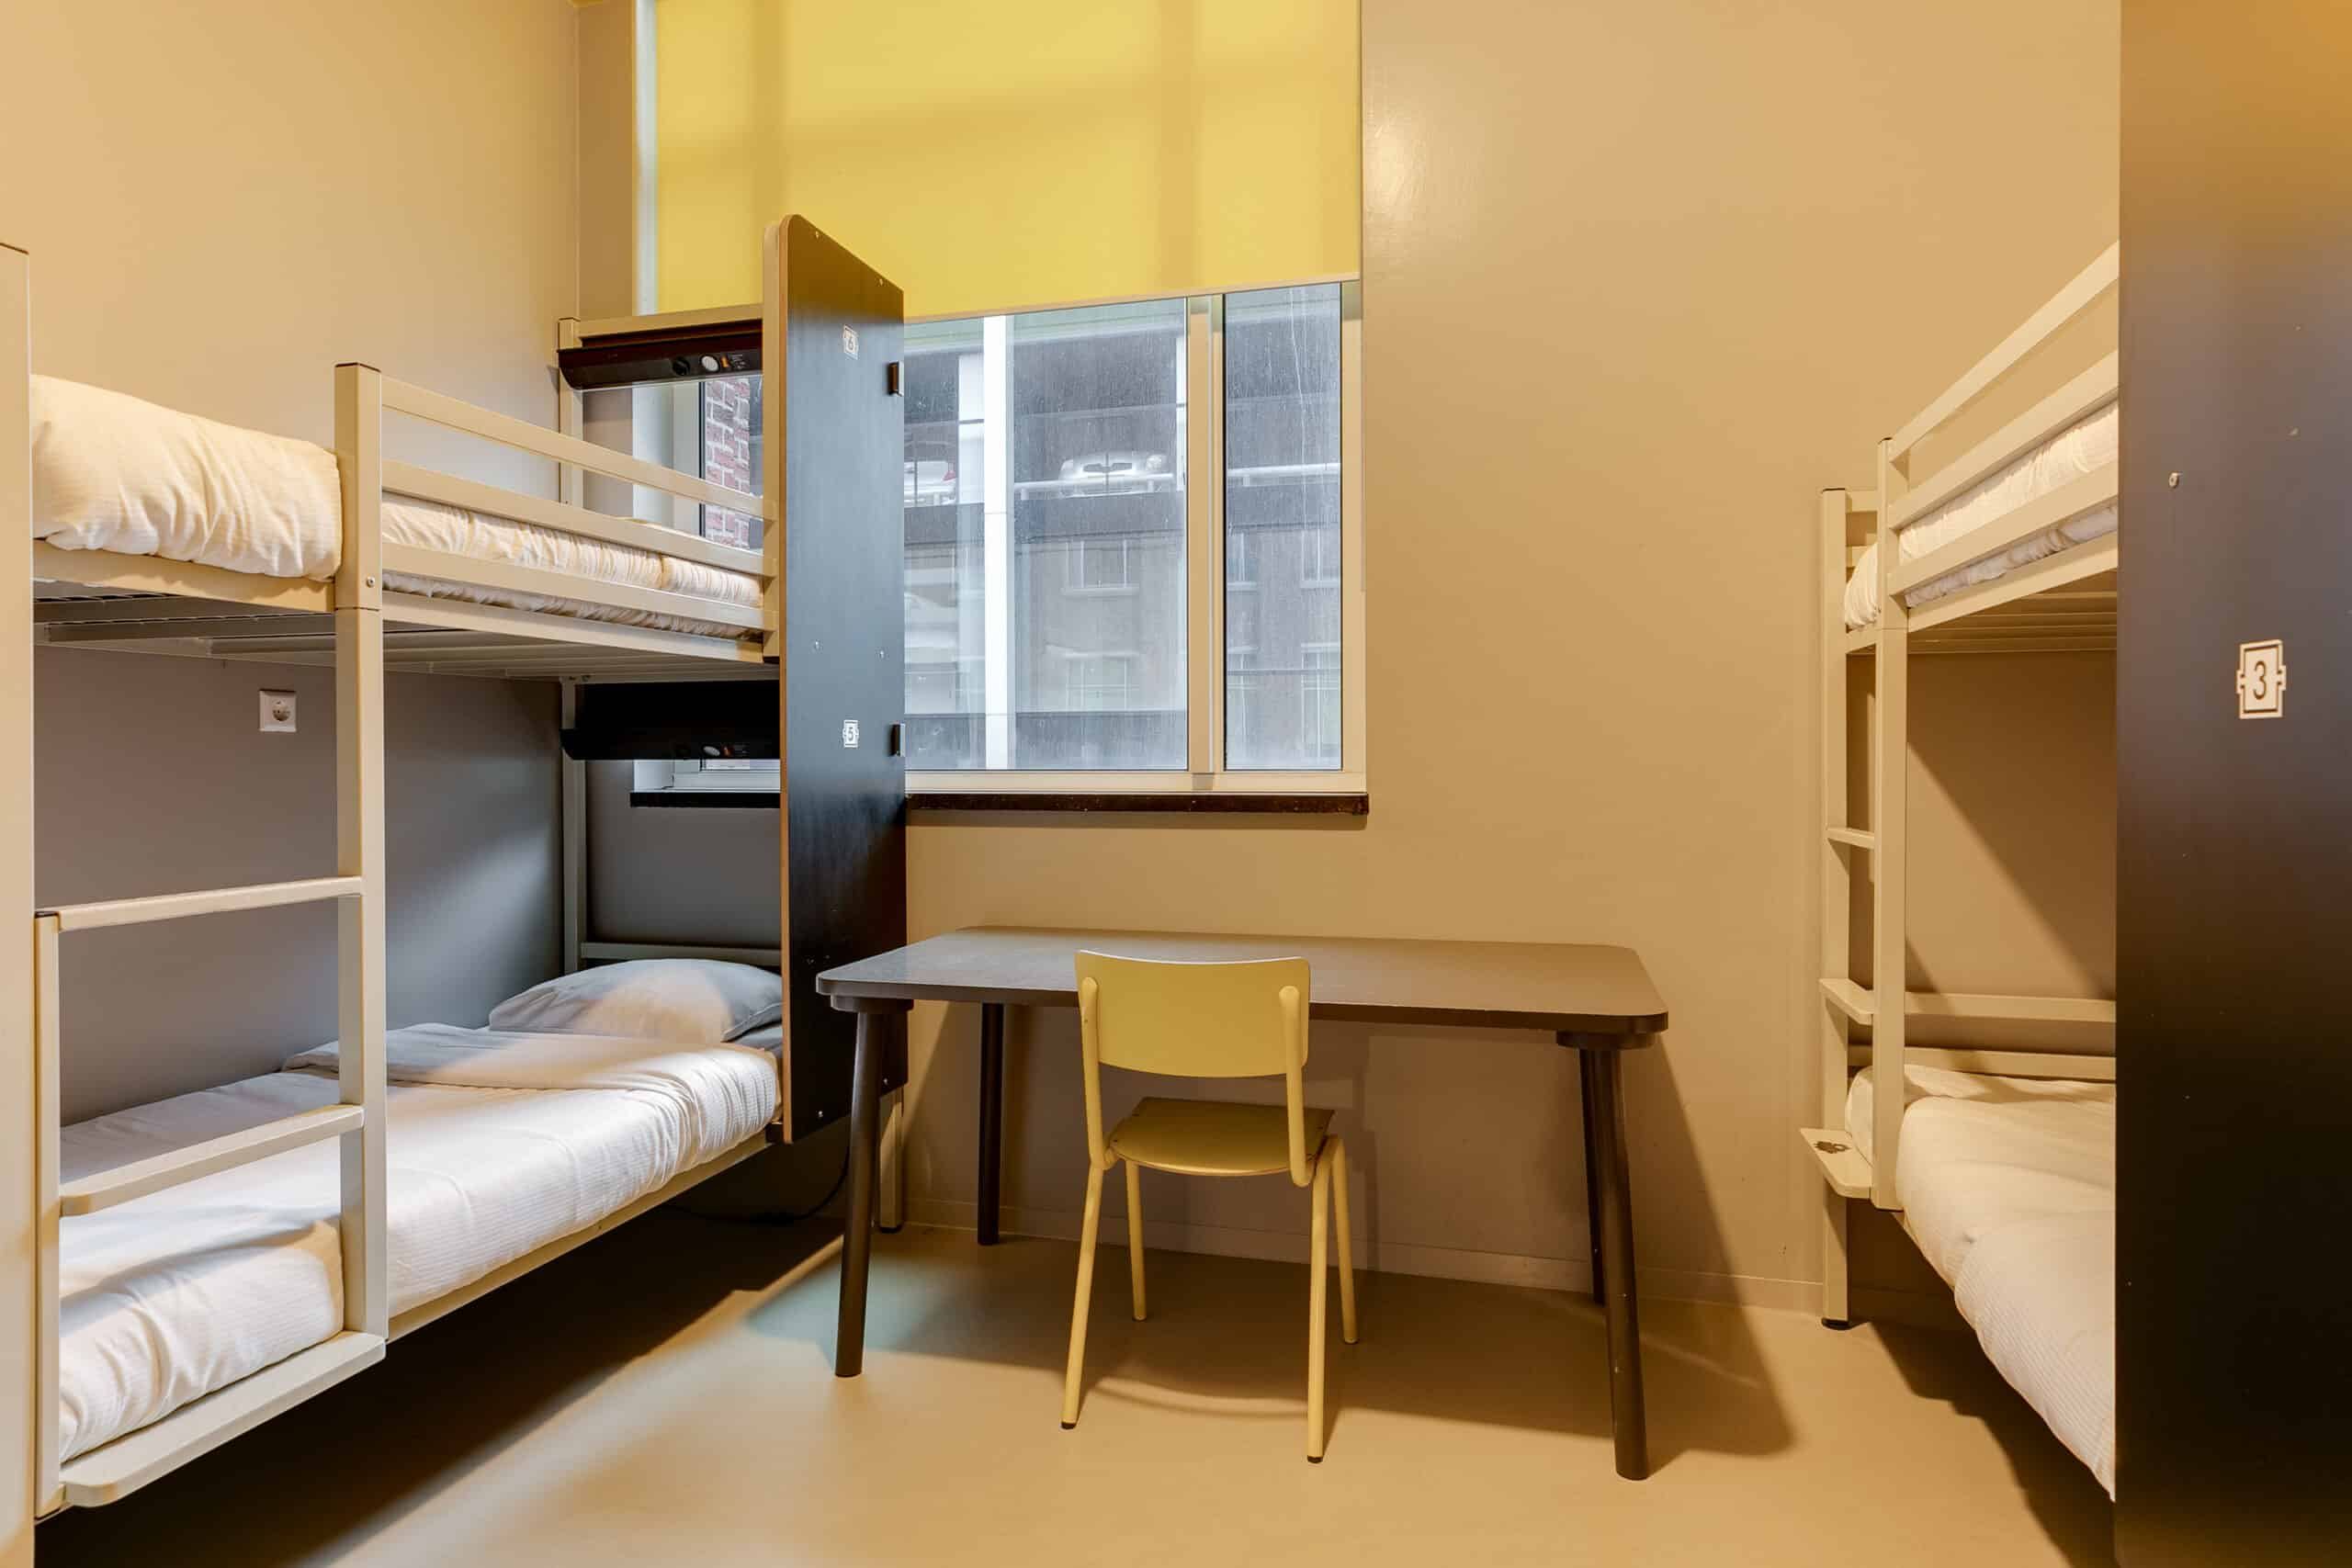 Schlafsaal mit Etagenbetten in der Jugendherberge Clinknoord Amsterdam